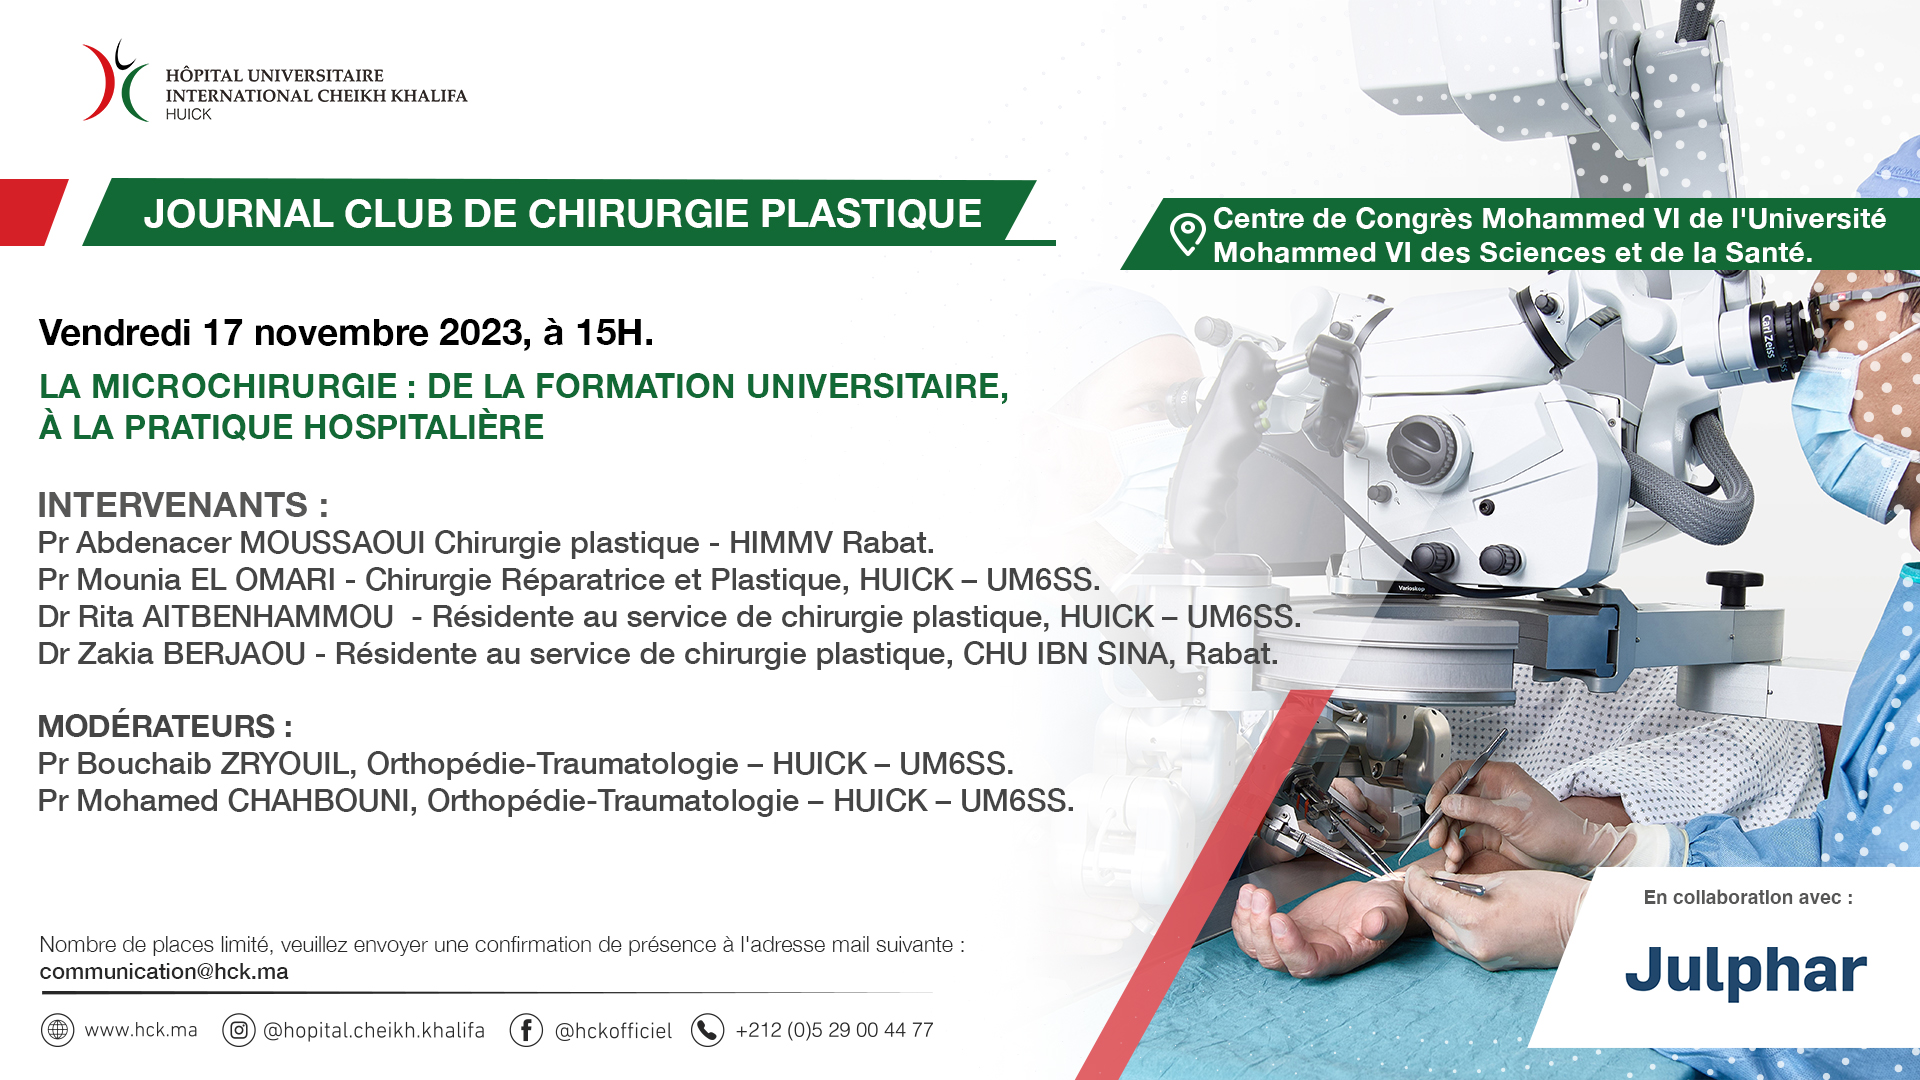 JOURNAL CLUB DE CHIRURGIE PLASTIQUE - LA MICROCHIRURGIE : DE LA FORMATION UNIVERSITAIRE, À LA PRATIQUE HOSPITALIÈRE